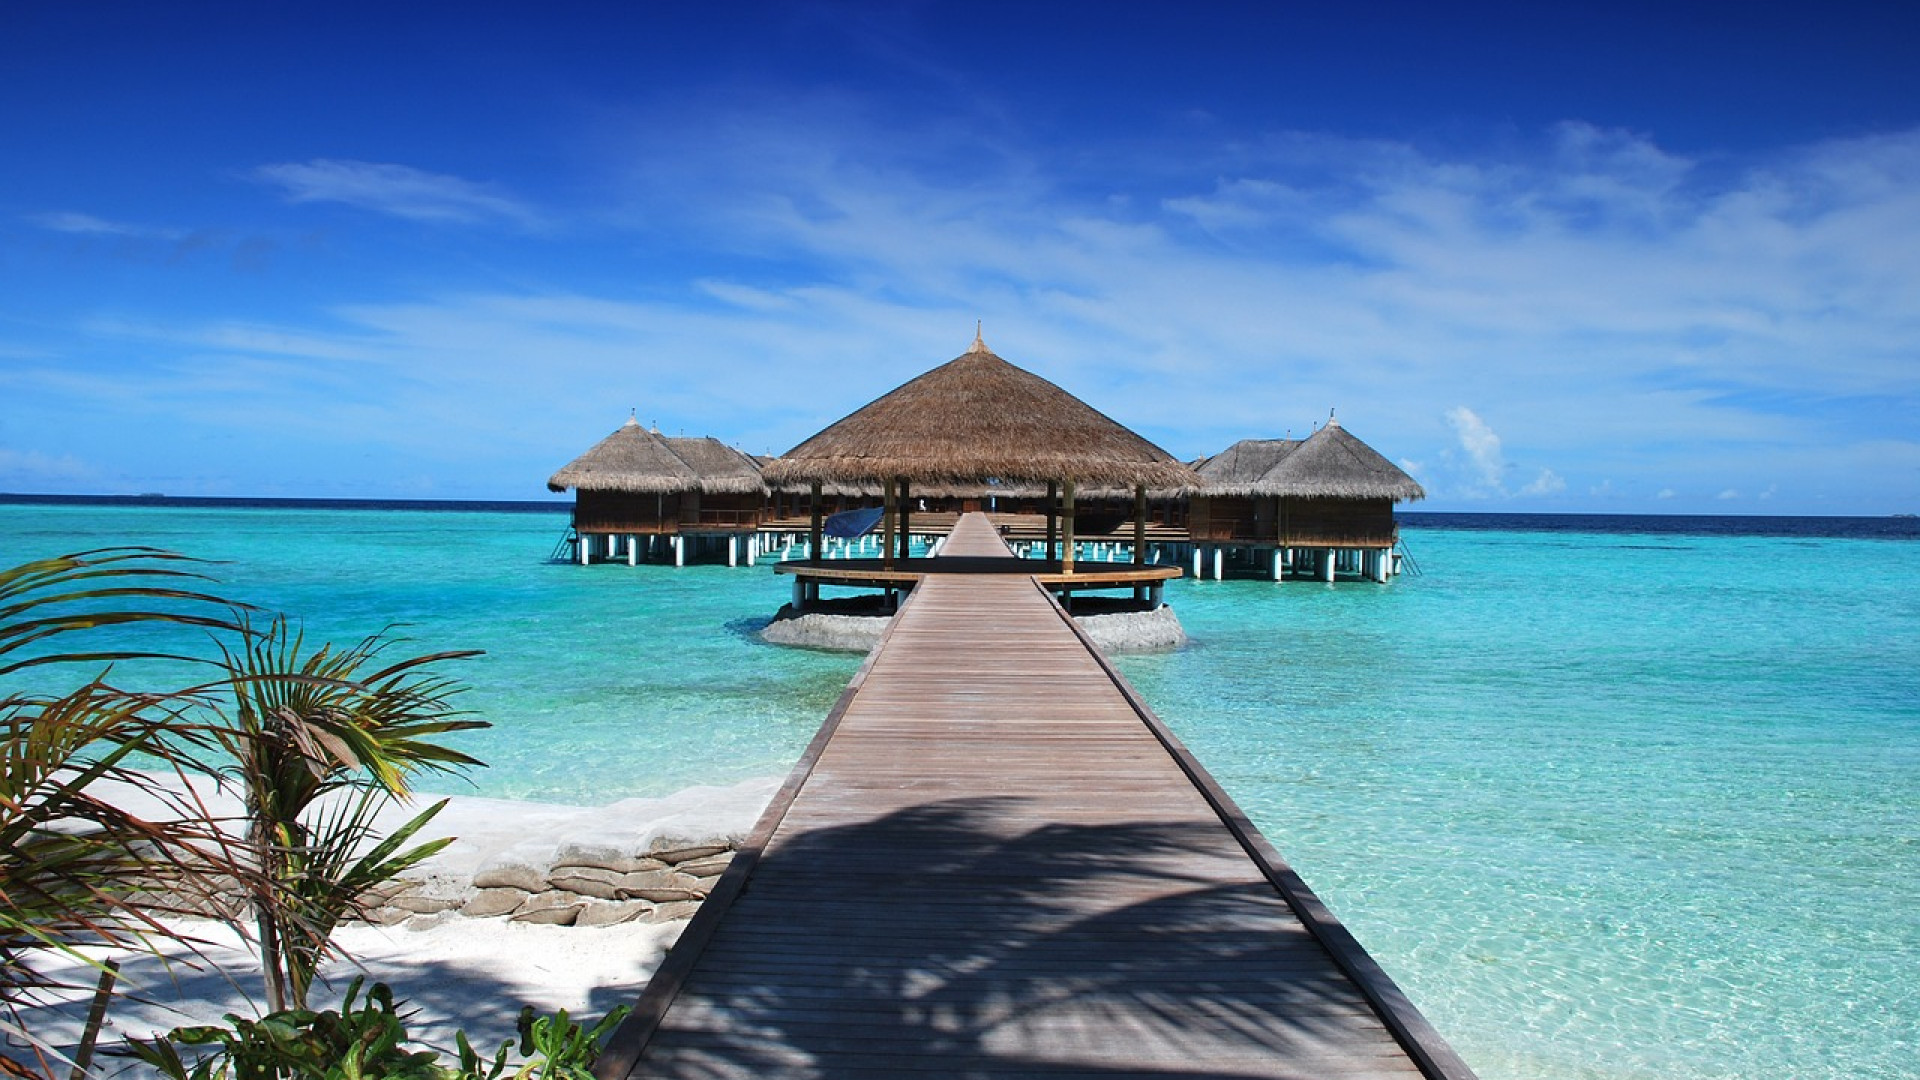 Quel est l’intérêt de partir aux Maldives pour ses prochaines vacances ?